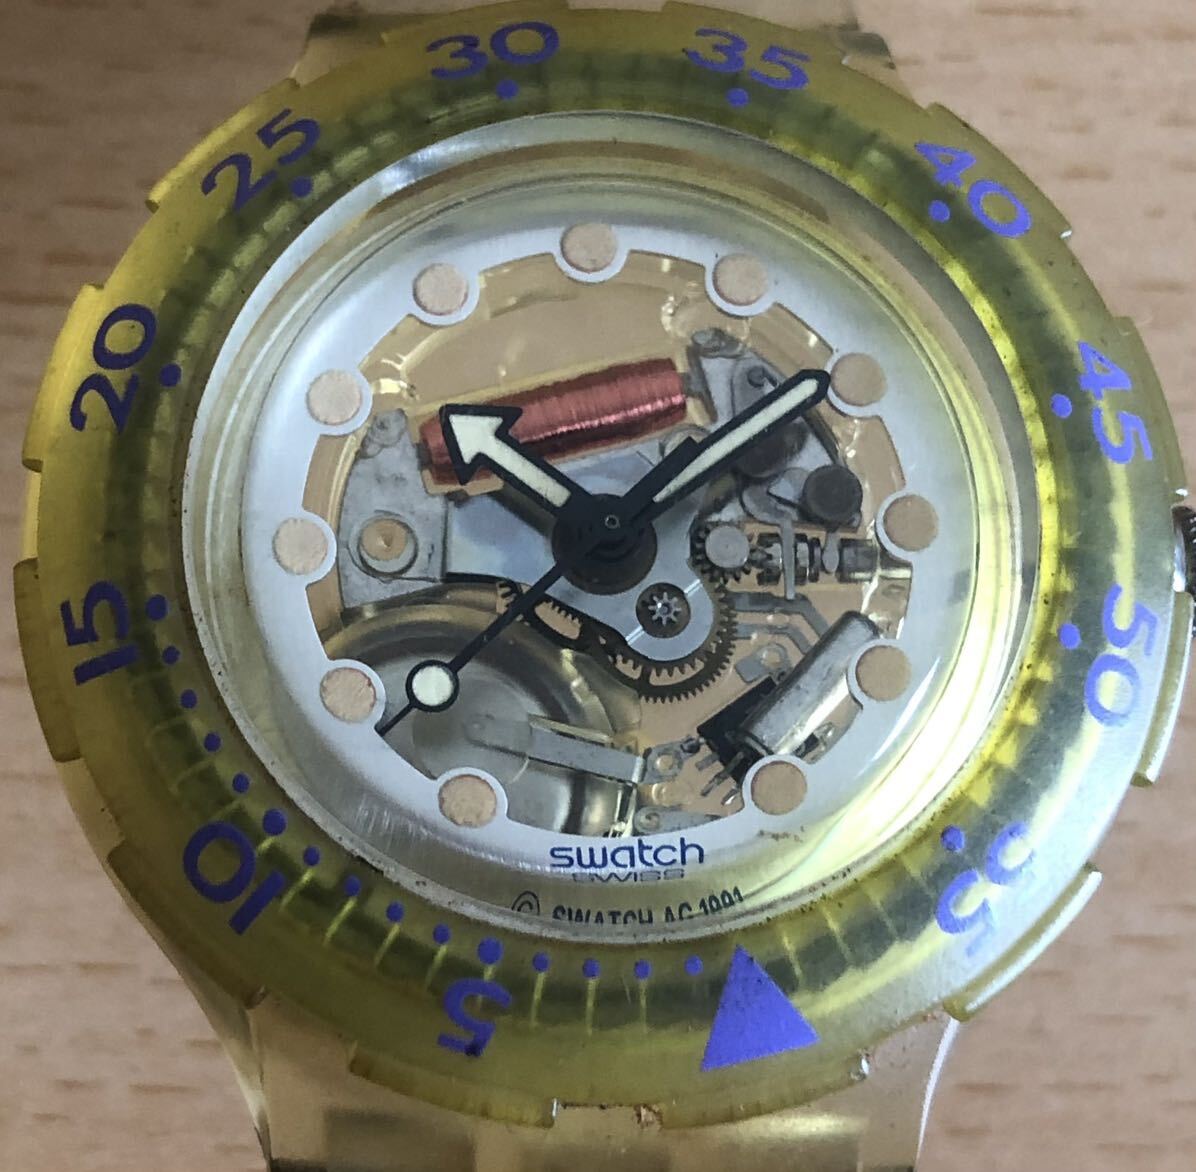 276-0383 swatch スウォッチ メンズ レディース 腕時計 ラバーベルト クオーツ 電池切れ 動作未確認の画像1